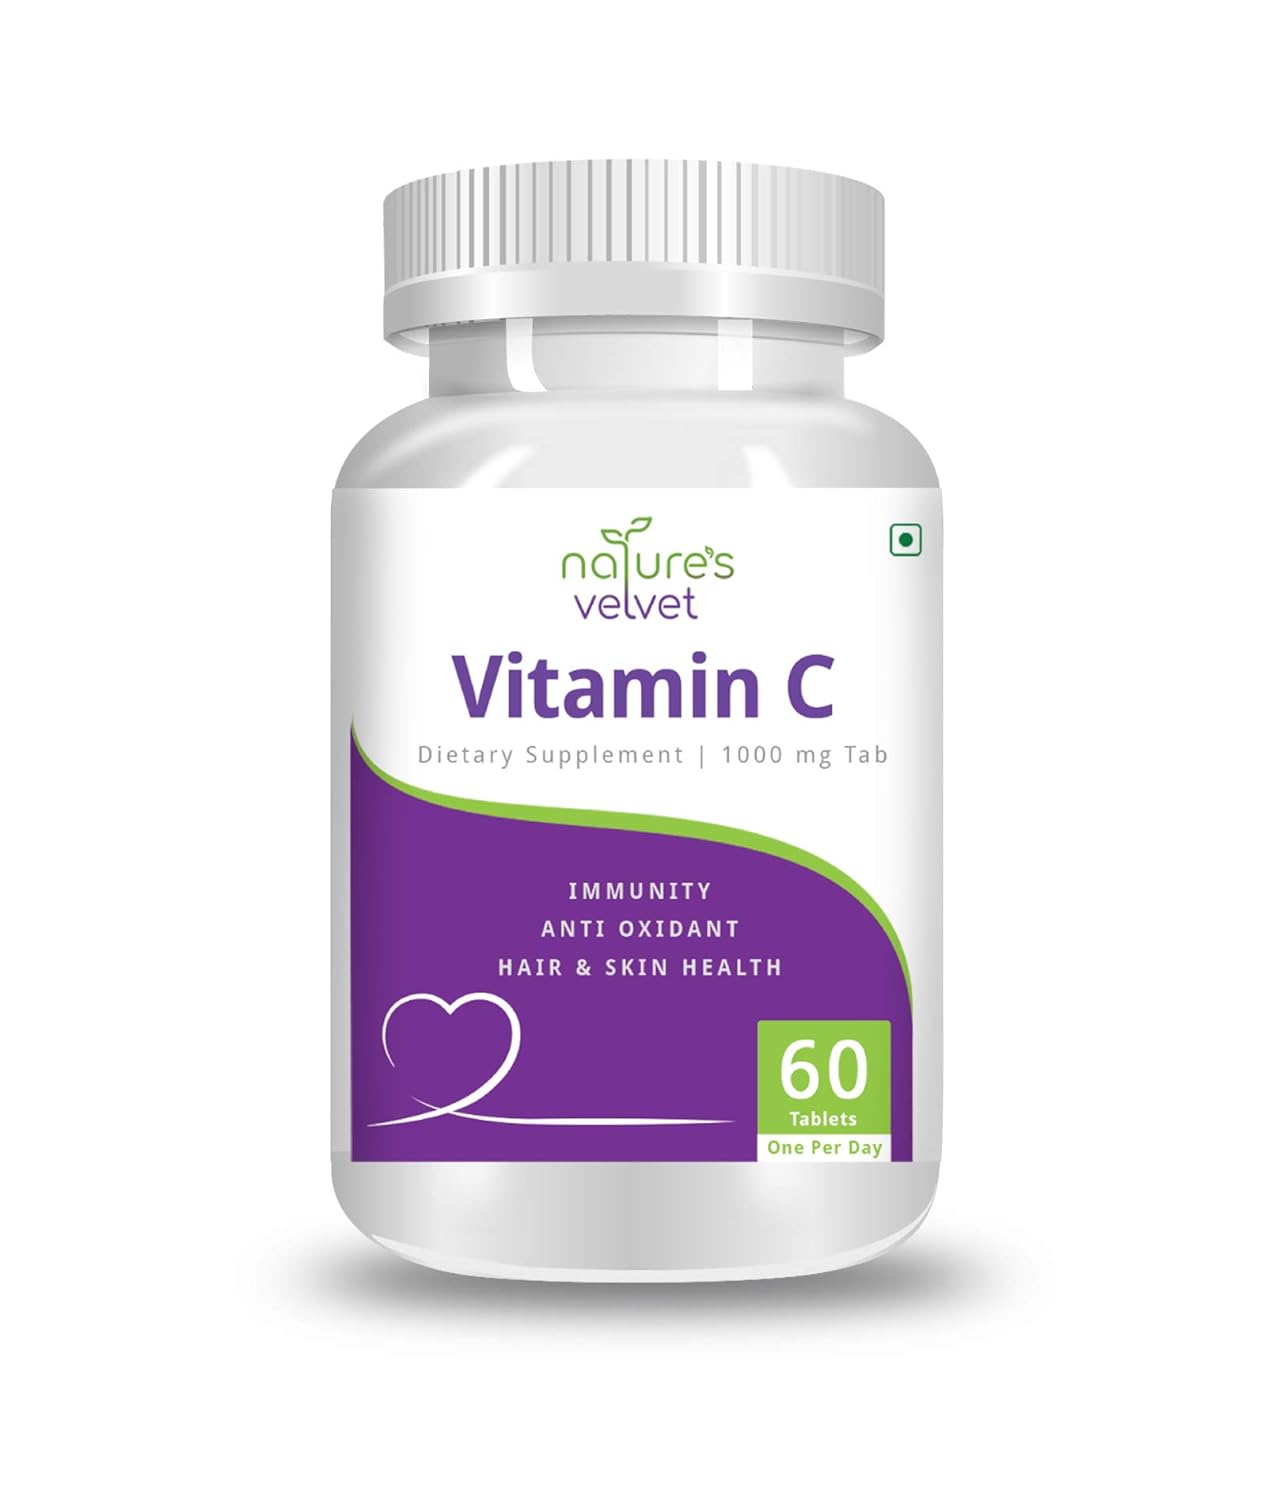 Velvet Vitamin C